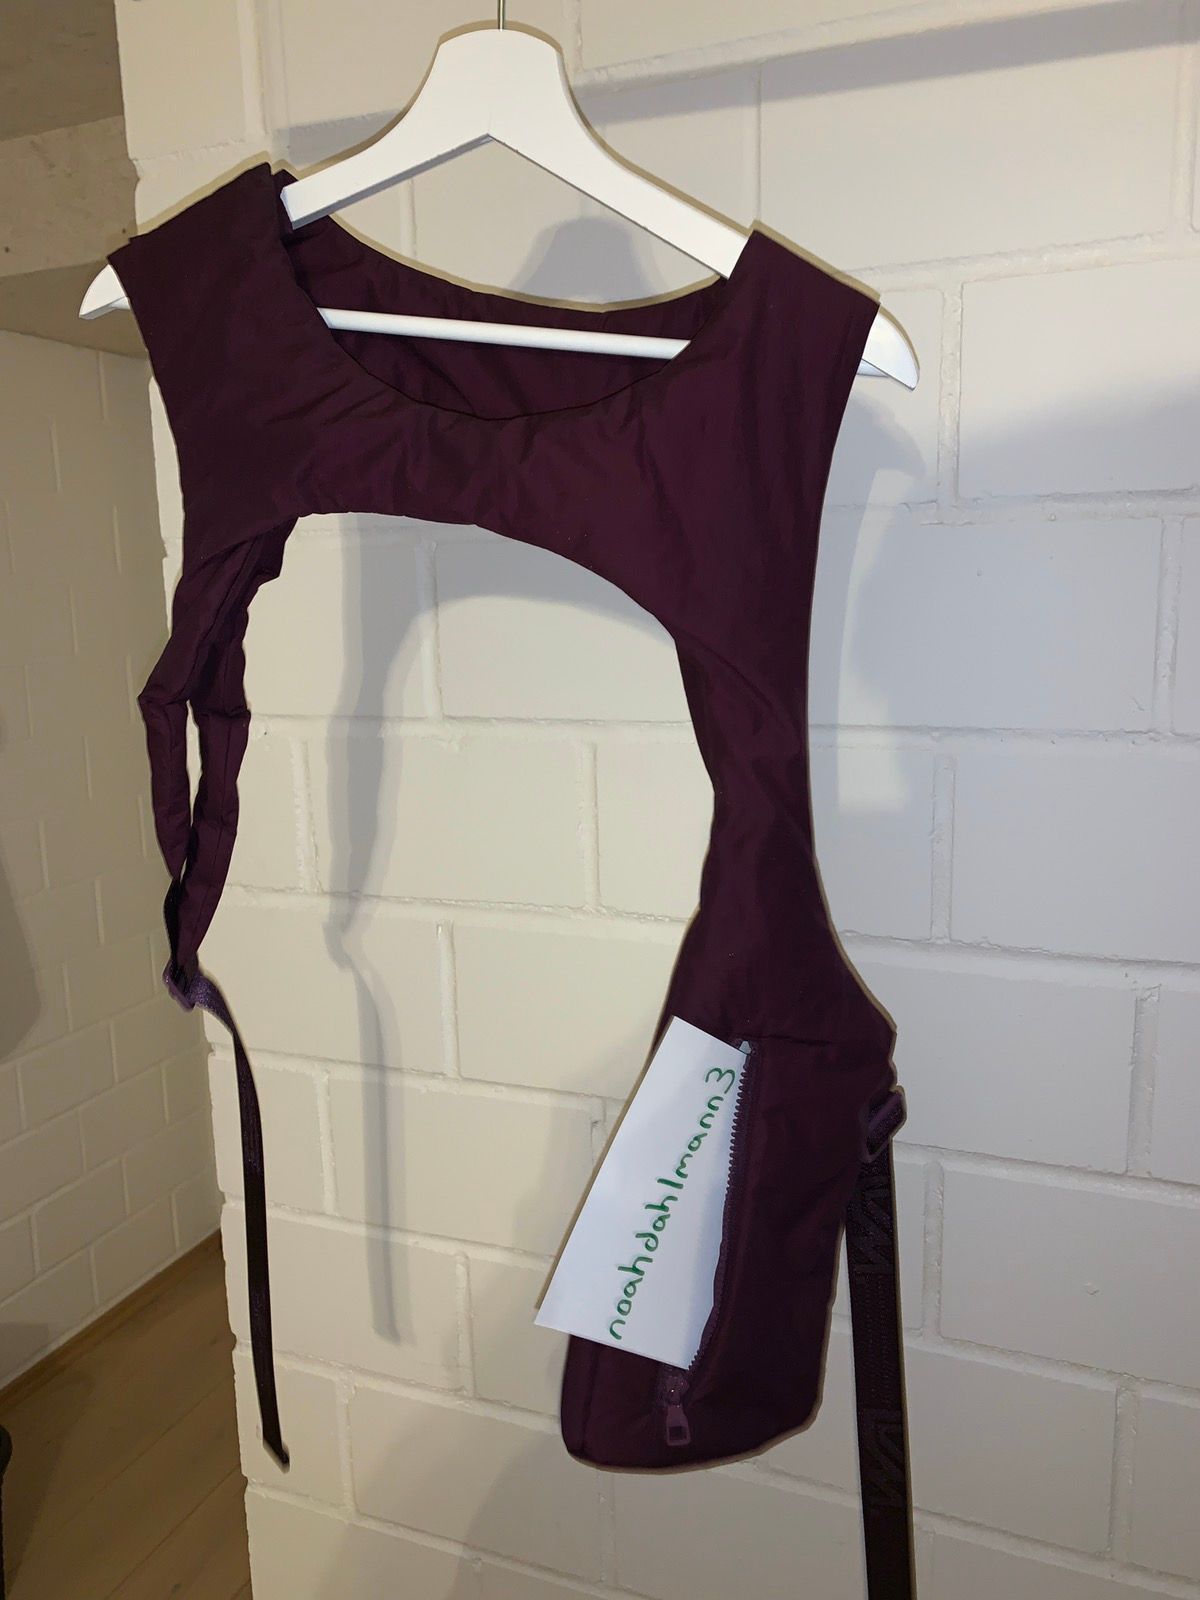 2XN1 - Louis Vuitton body harness by Virgil Abloh.